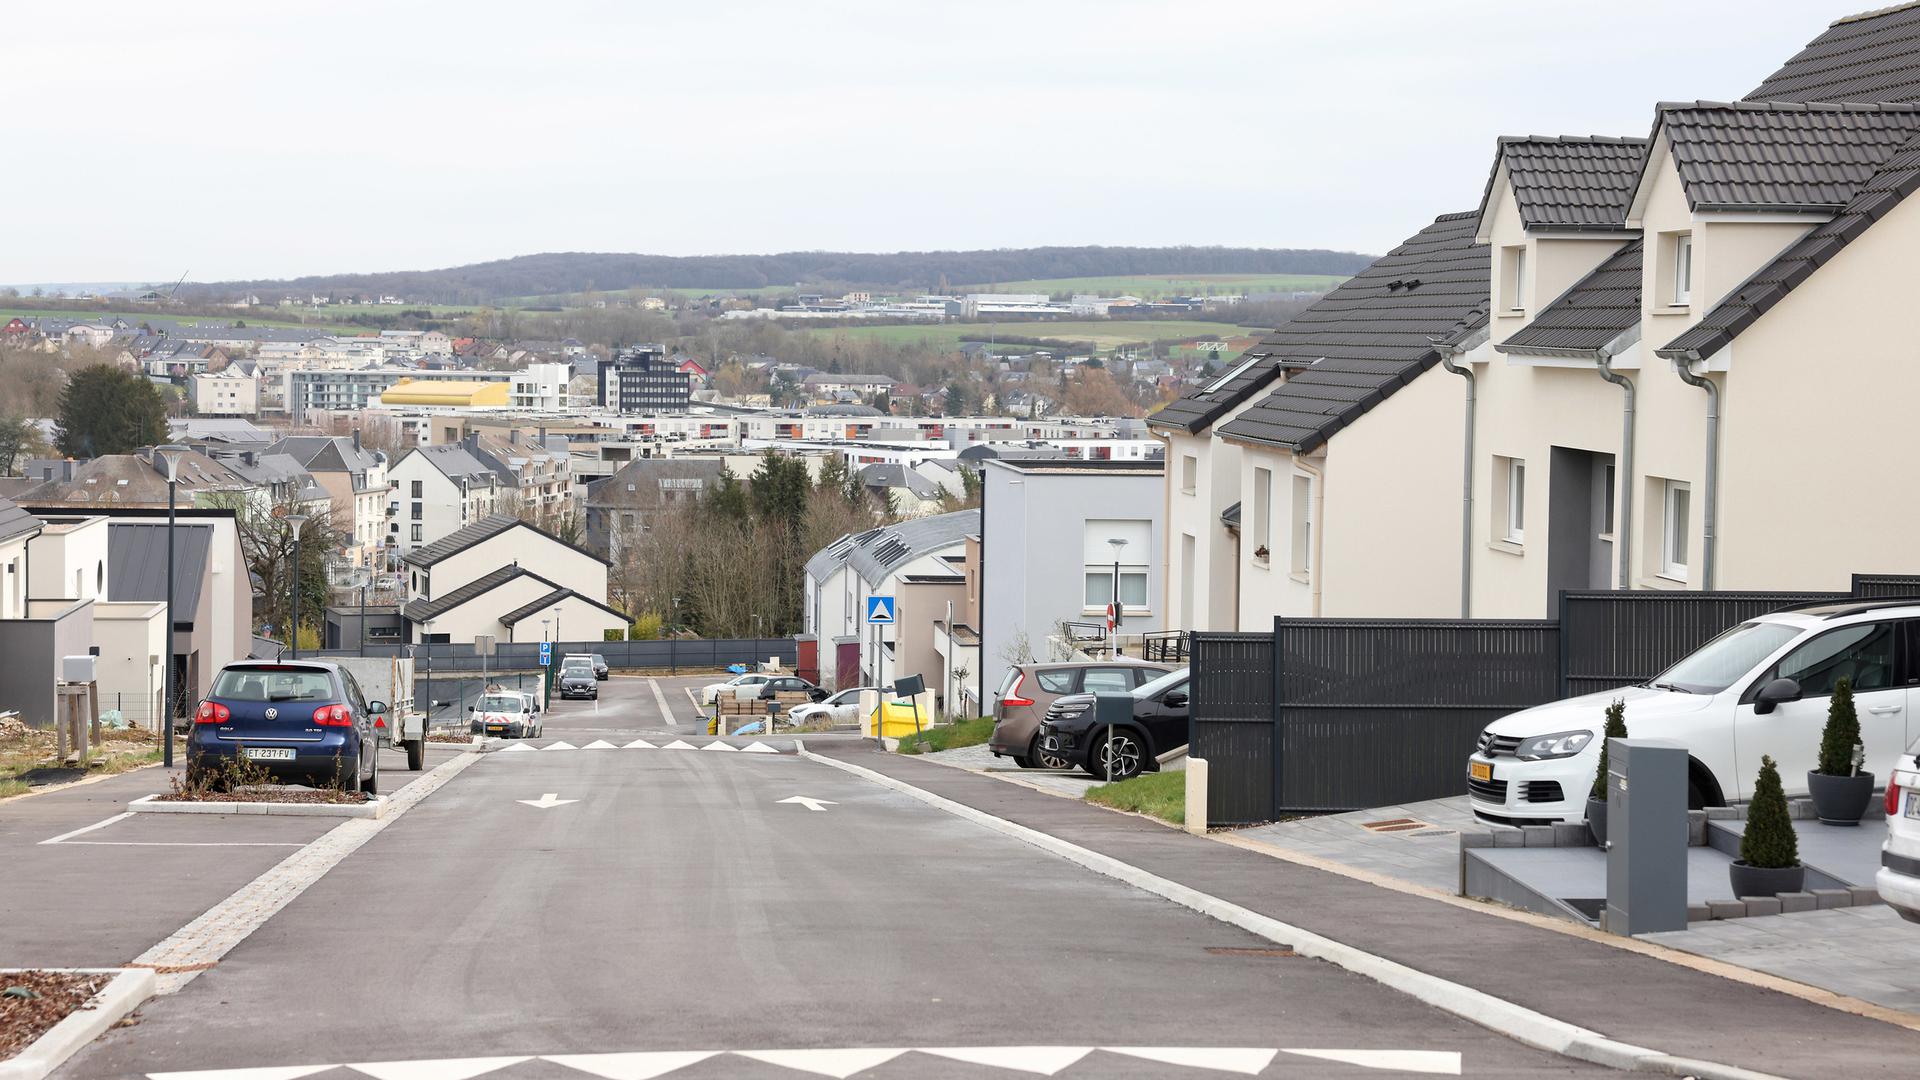 Mondorff et Mondorf-les-Bains forment un seul et même ensemble où la frontière franco-luxembourgeoise se remarque à peine.